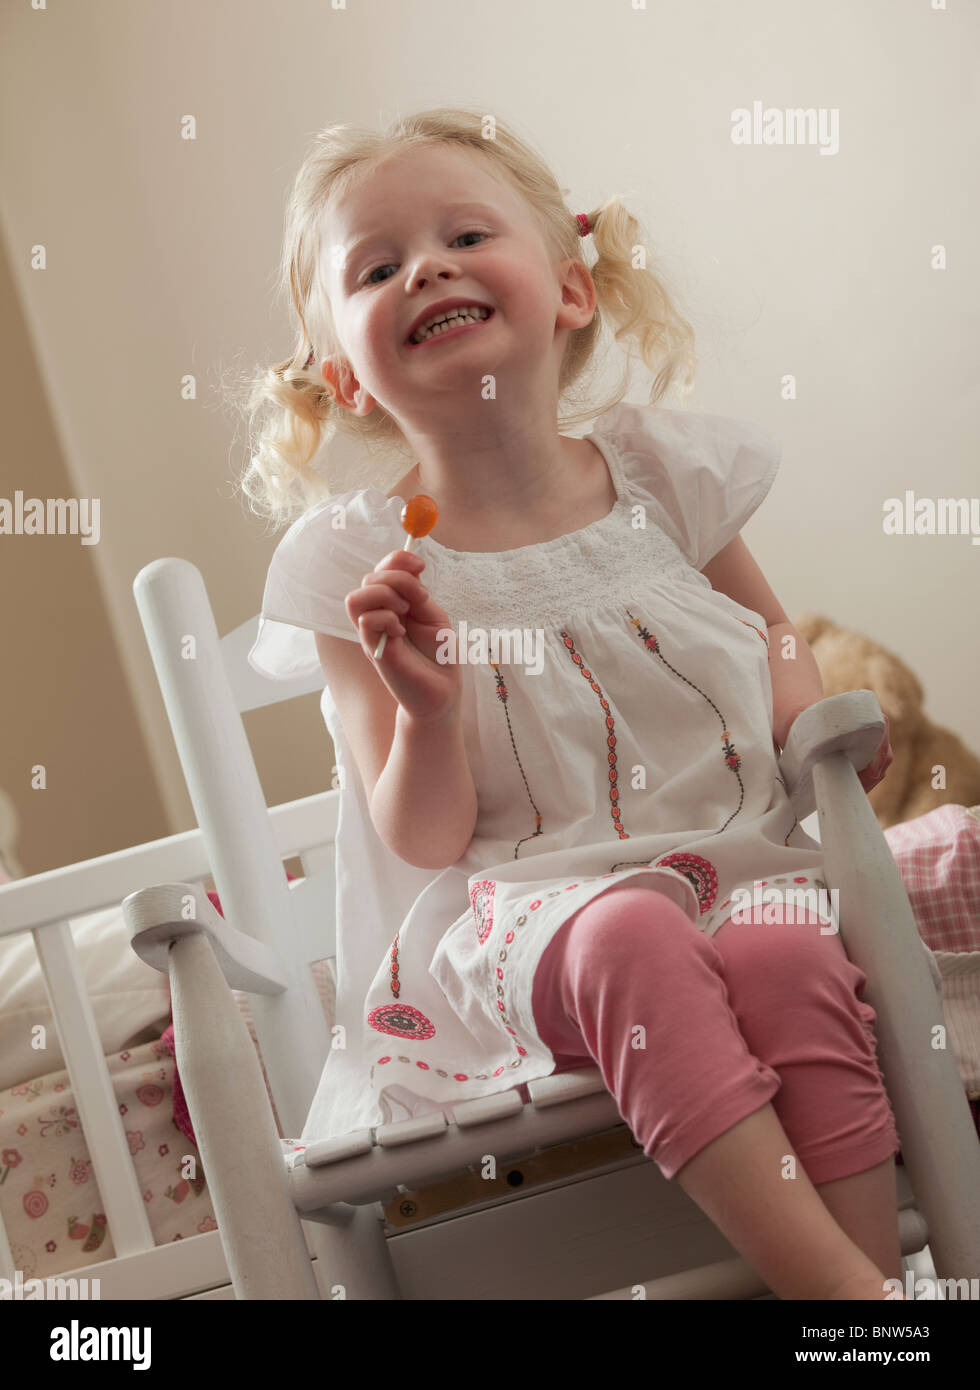 Jeune fille dans un fauteuil à bascule de manger une bonne poire Banque D'Images